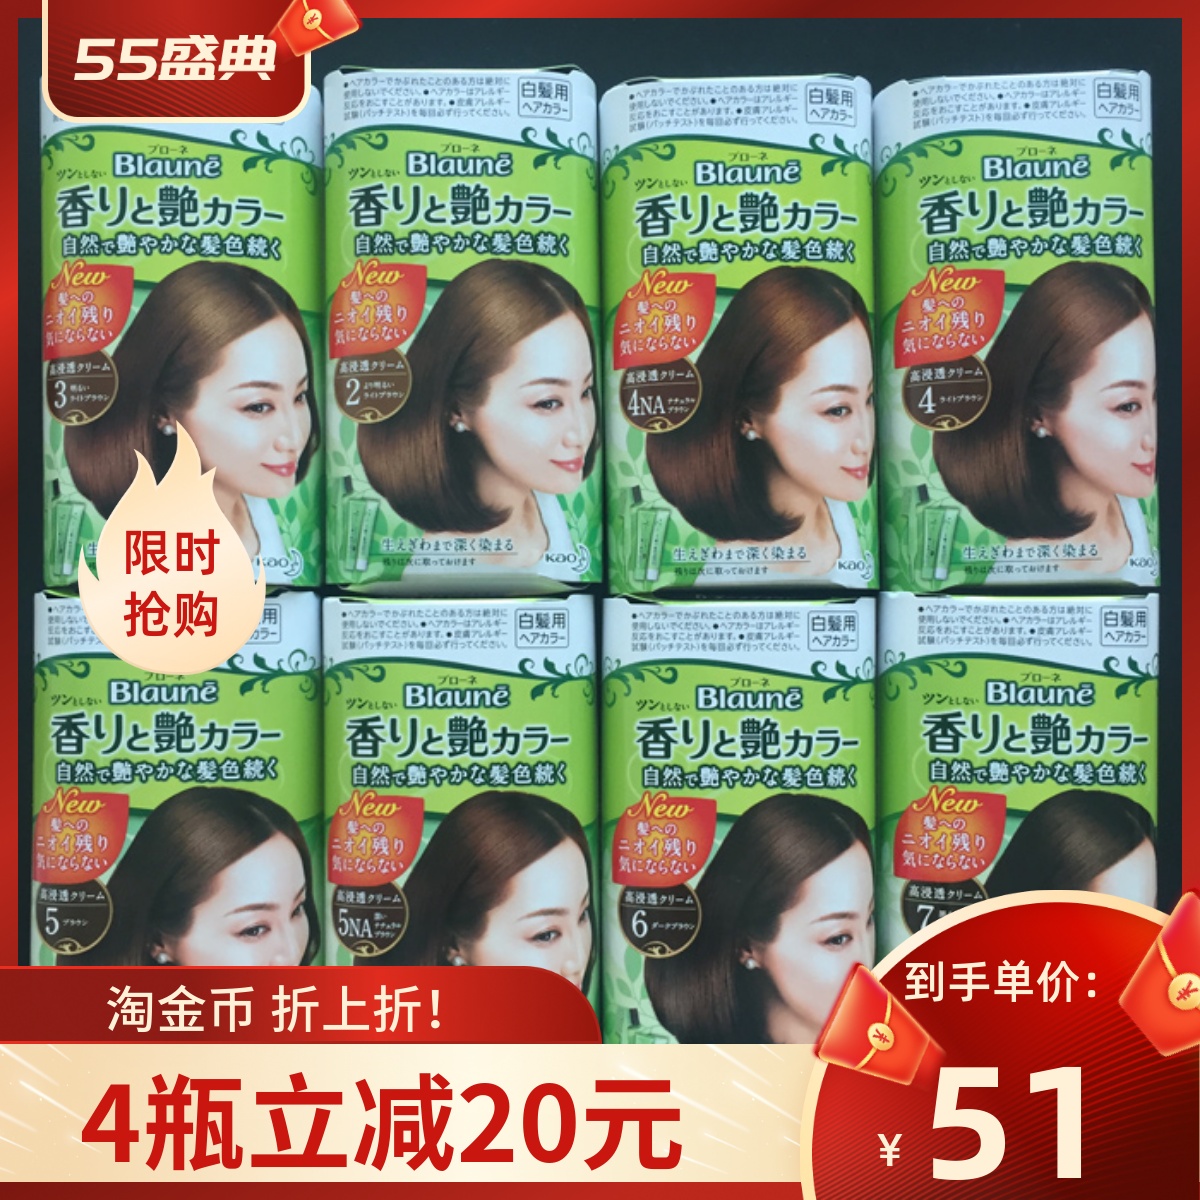 现货日本KAO/花王Blaune白发专用染发剂膏纯植物配方绿盒